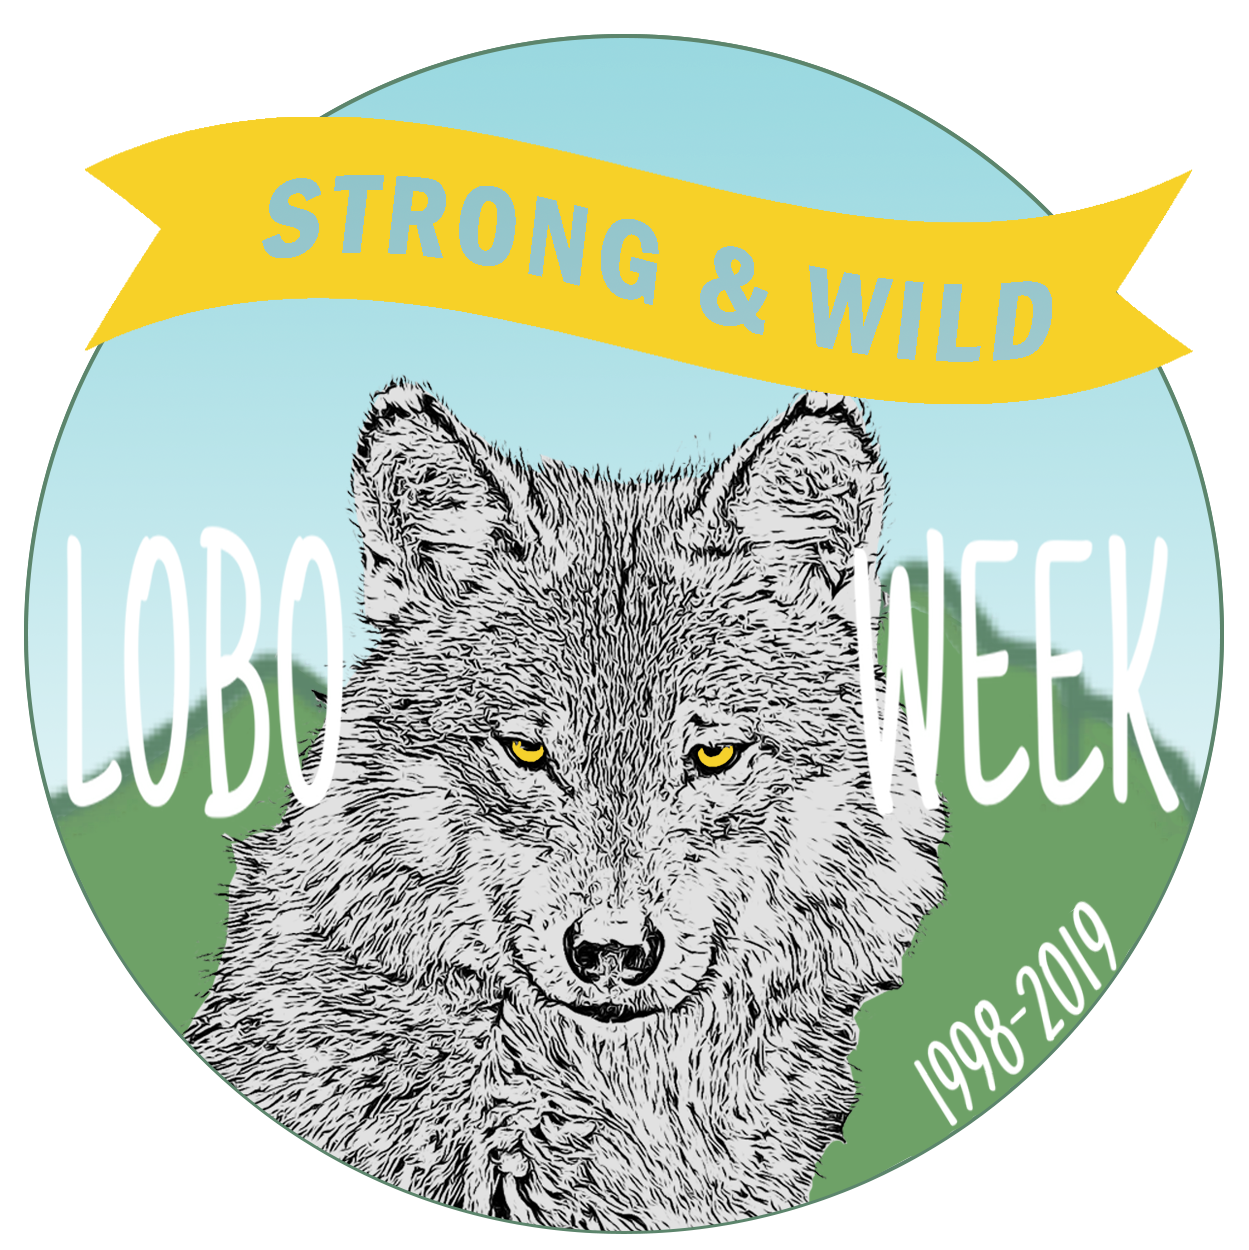 LoboWeek 2019 badge